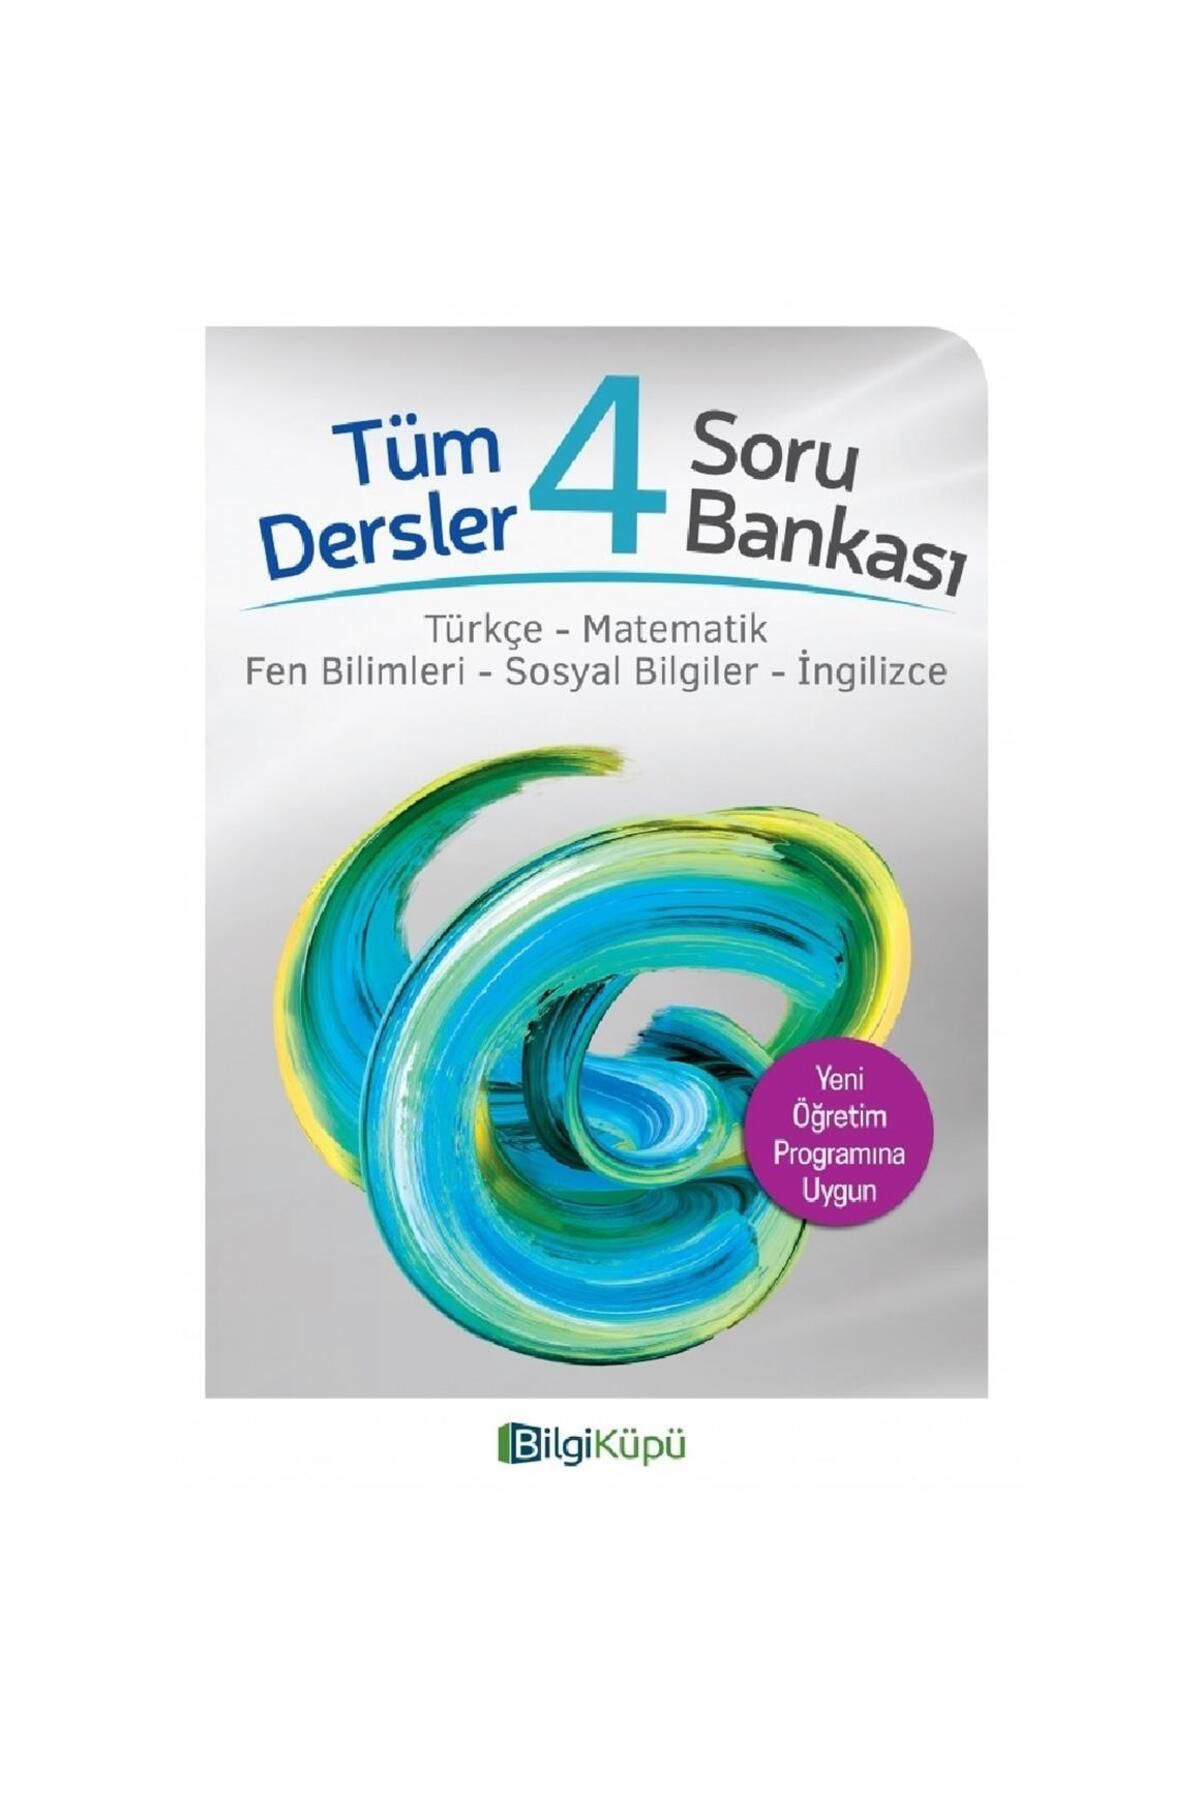 Bilgi Küpü Yayınları 4. Sınıf Tüm Dersler Soru Bankası